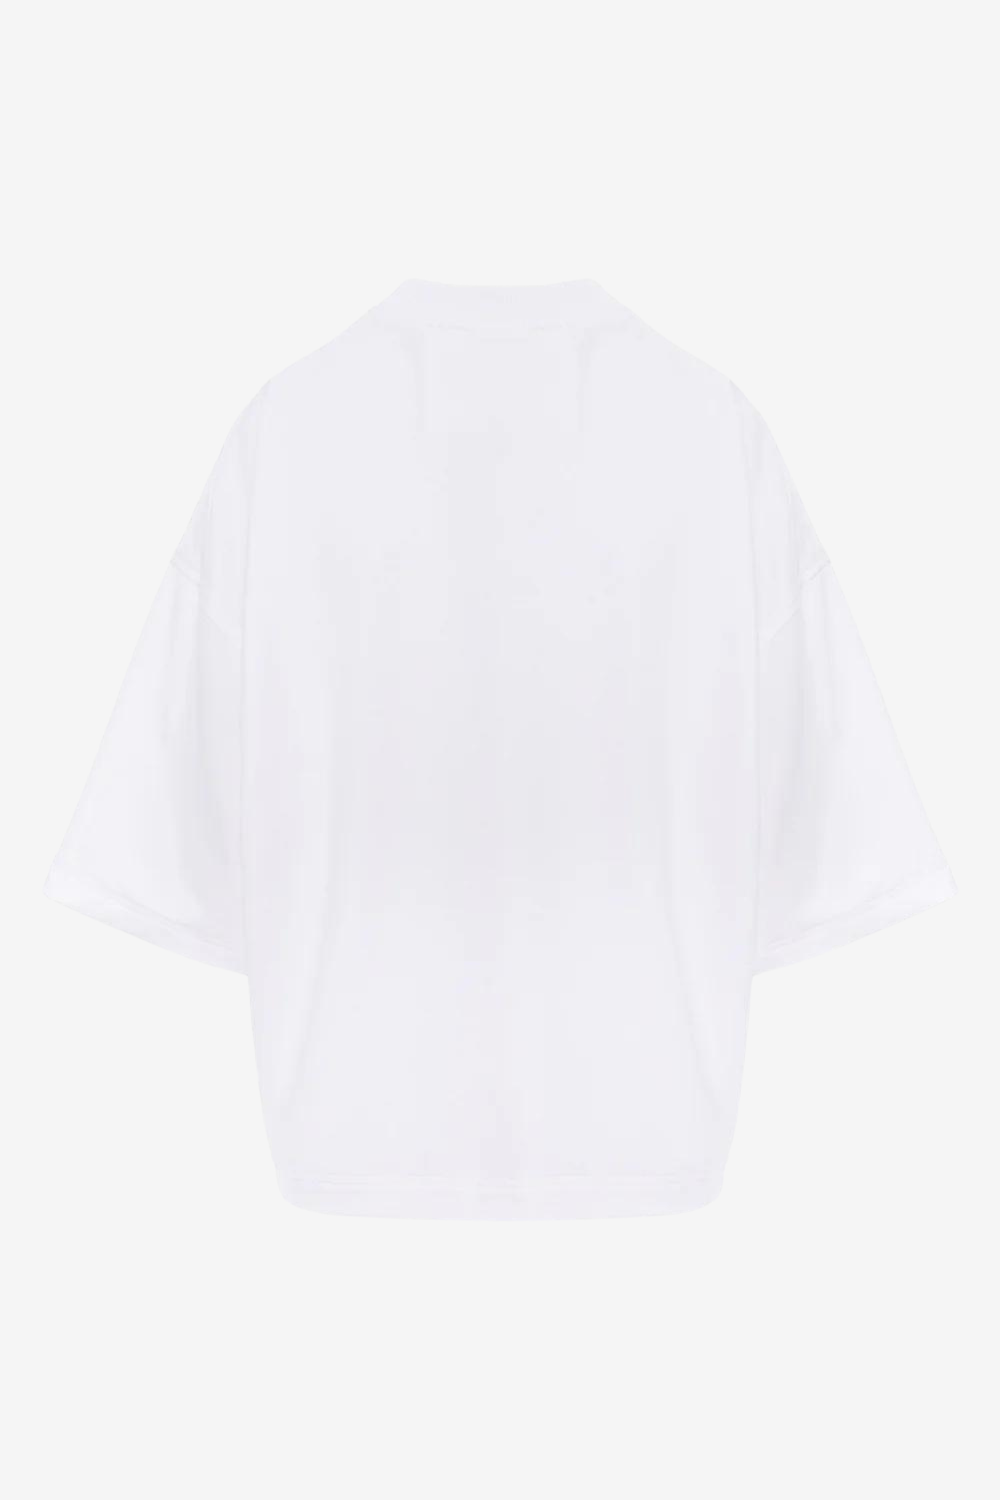 Tricou damă, alb, imprimeu Kyo Velvet, bumbac premium, croială oversized, detalii elegante (mâneci clopot).